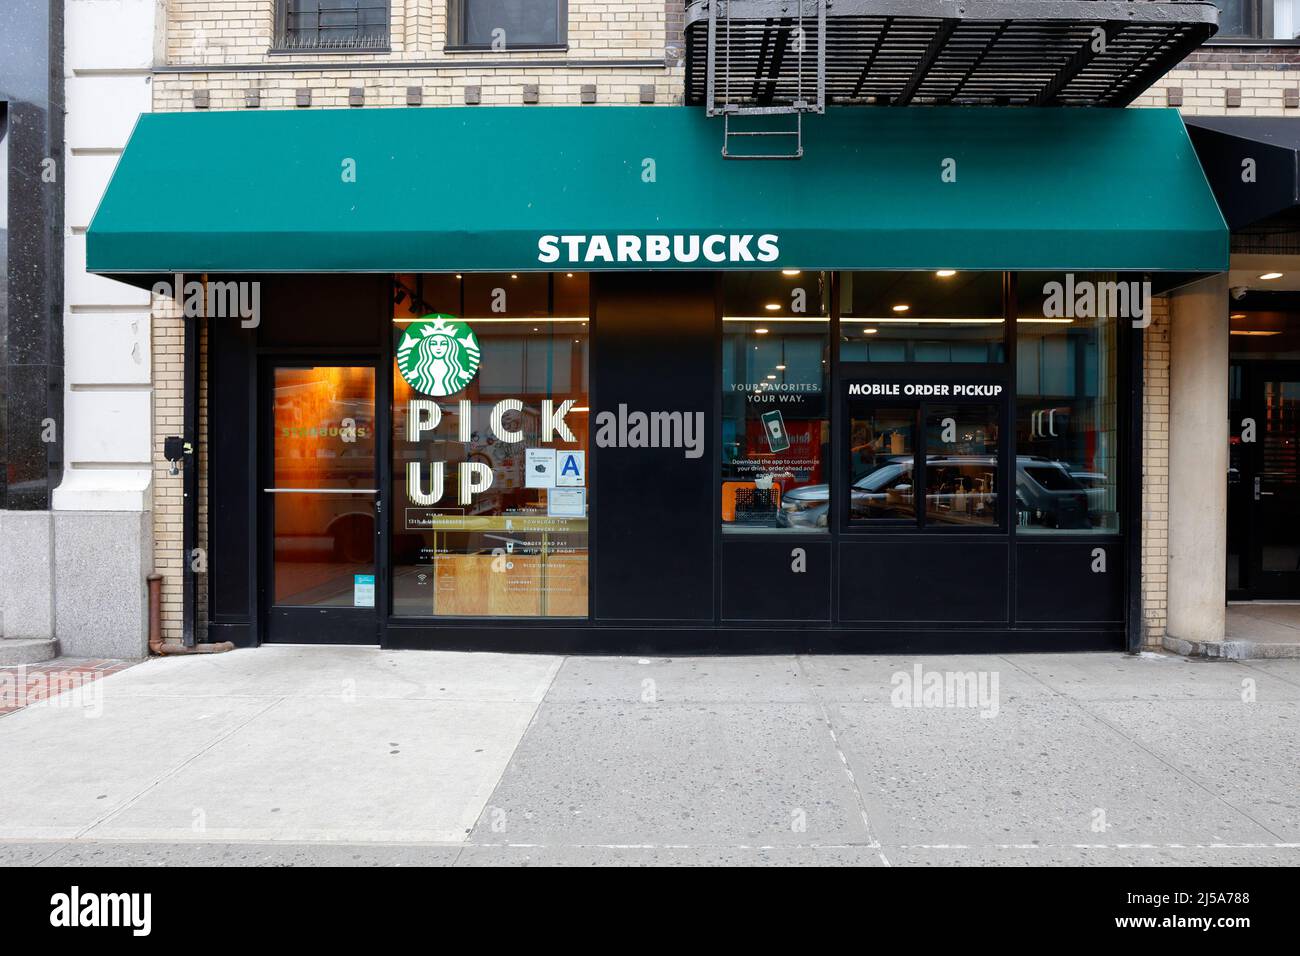 Starbucks Pickup, 111 University PL, New York, NYC Foto del escaparate de una cafetería sin asiento optimizada para pedidos digitales en cualquier lugar. Foto de stock